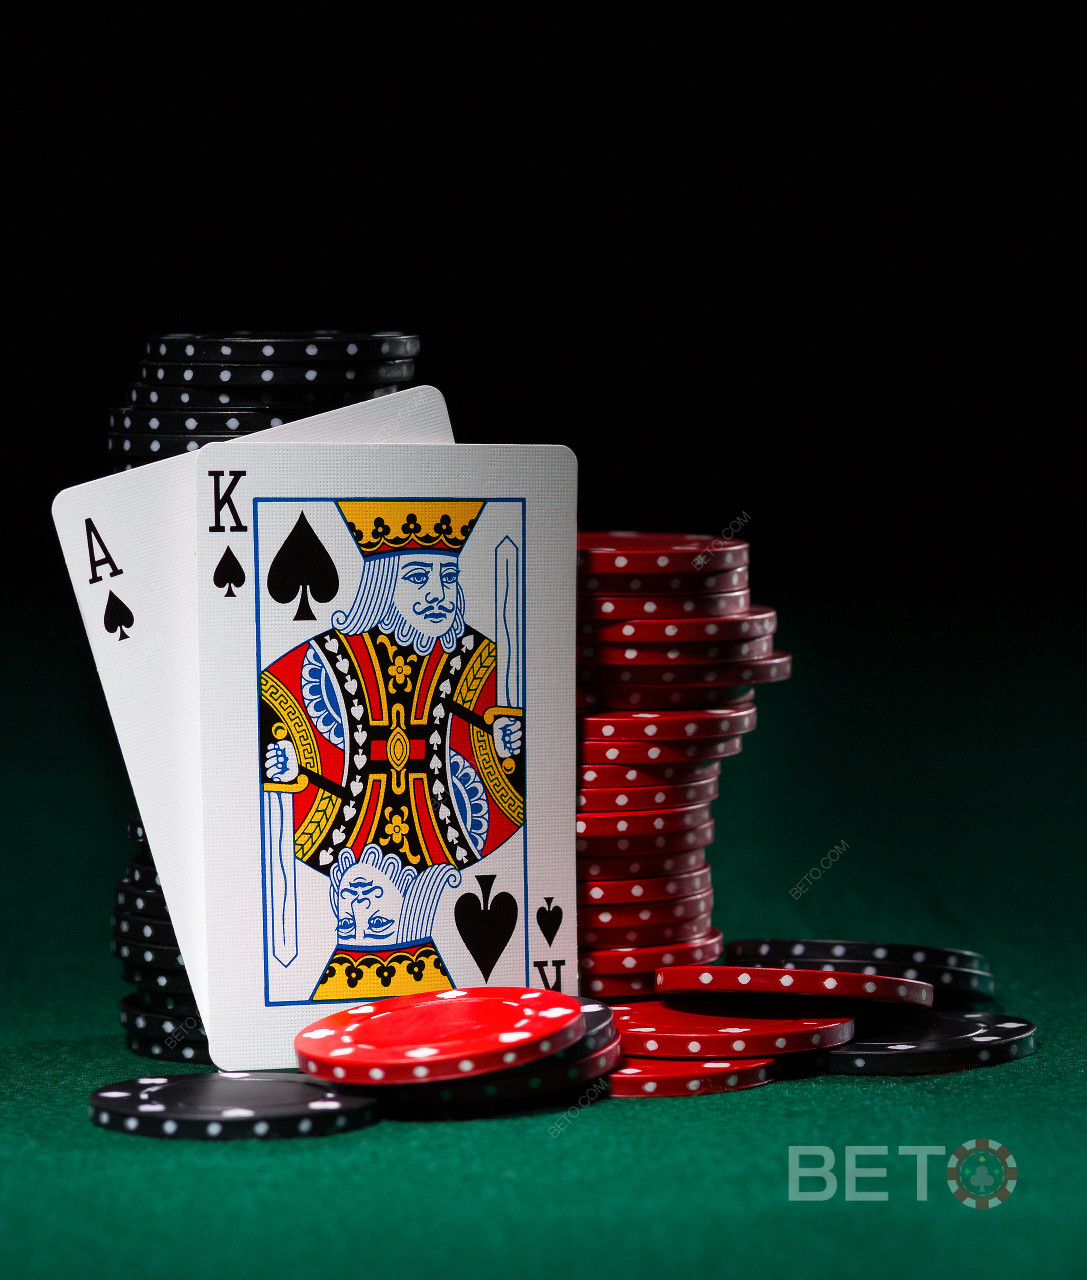 Permainan video poker dan permainan kartu juga tersedia di BitStarz.